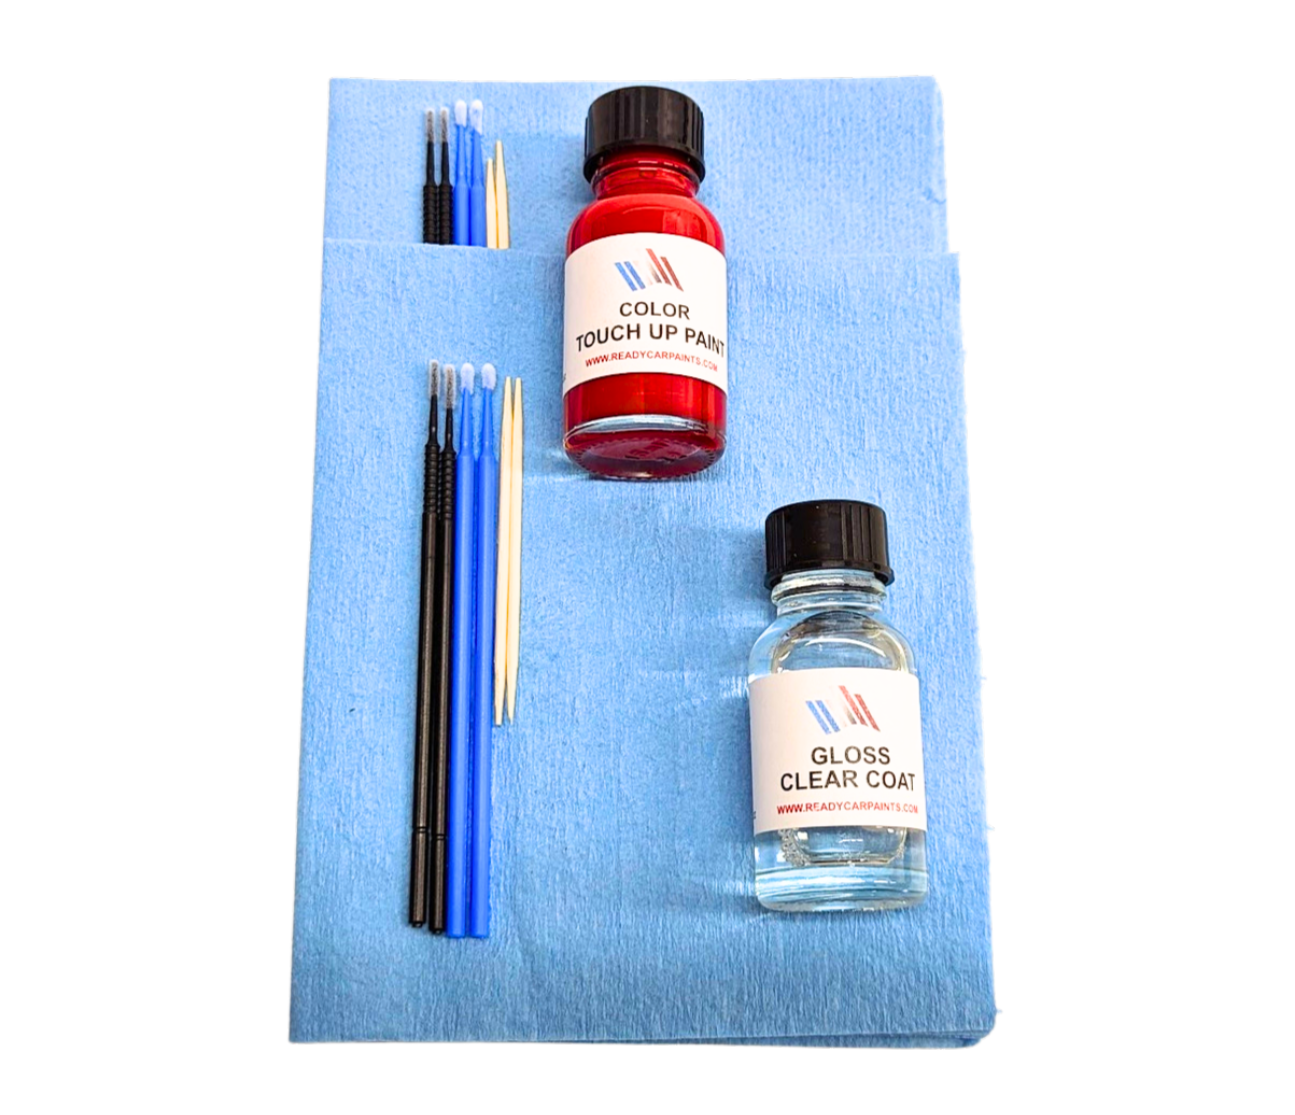 SUBARU M3Y Hyper Blue Touch Up Paint Kit 100% OEM Color Match